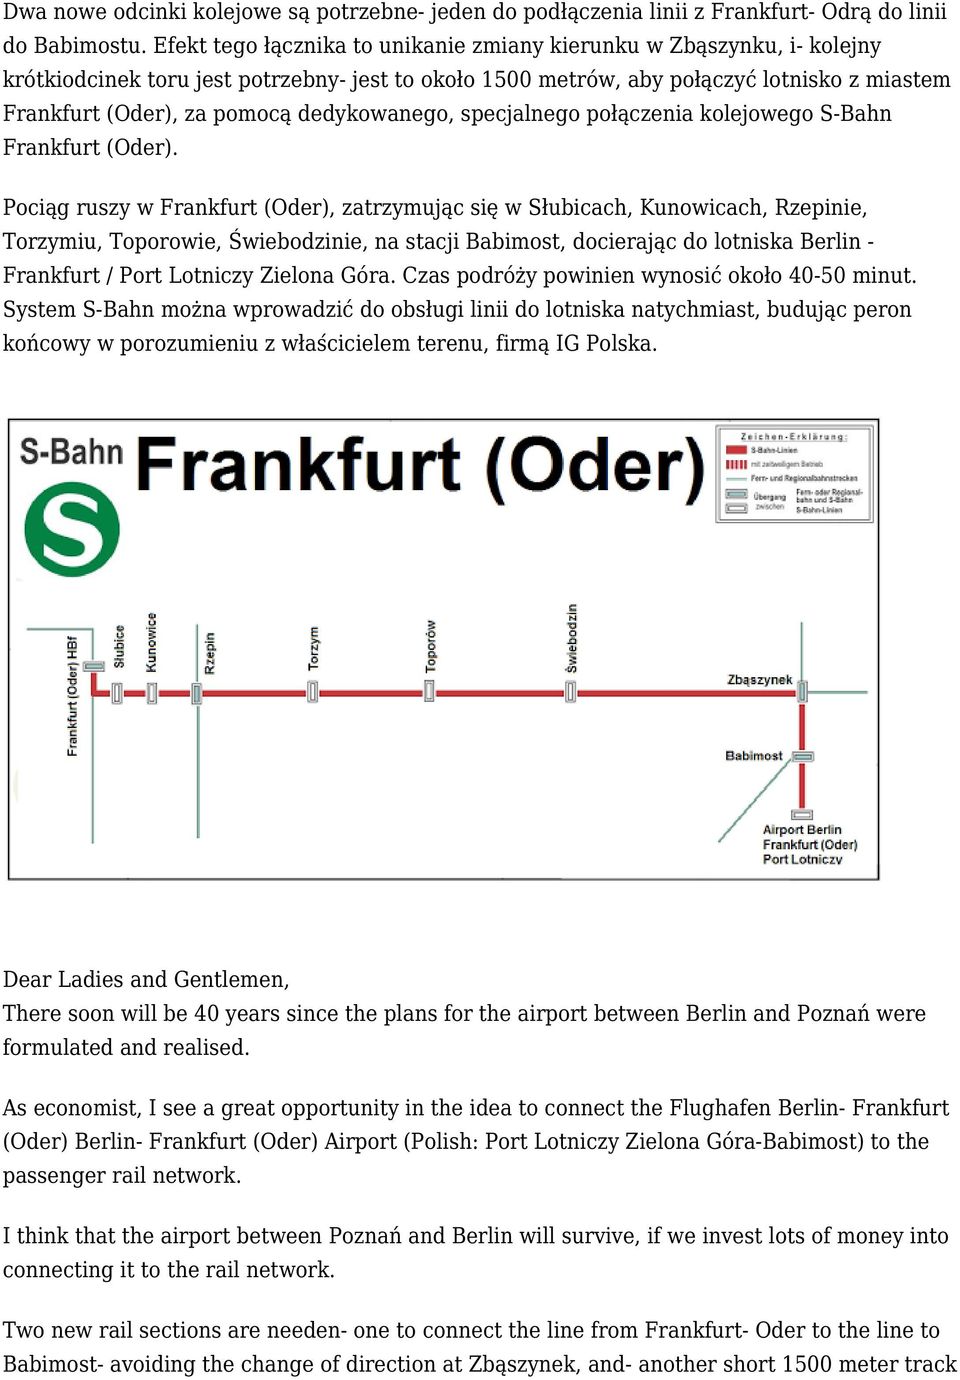 dedykowanego, specjalnego połączenia kolejowego S-Bahn Frankfurt (Oder).